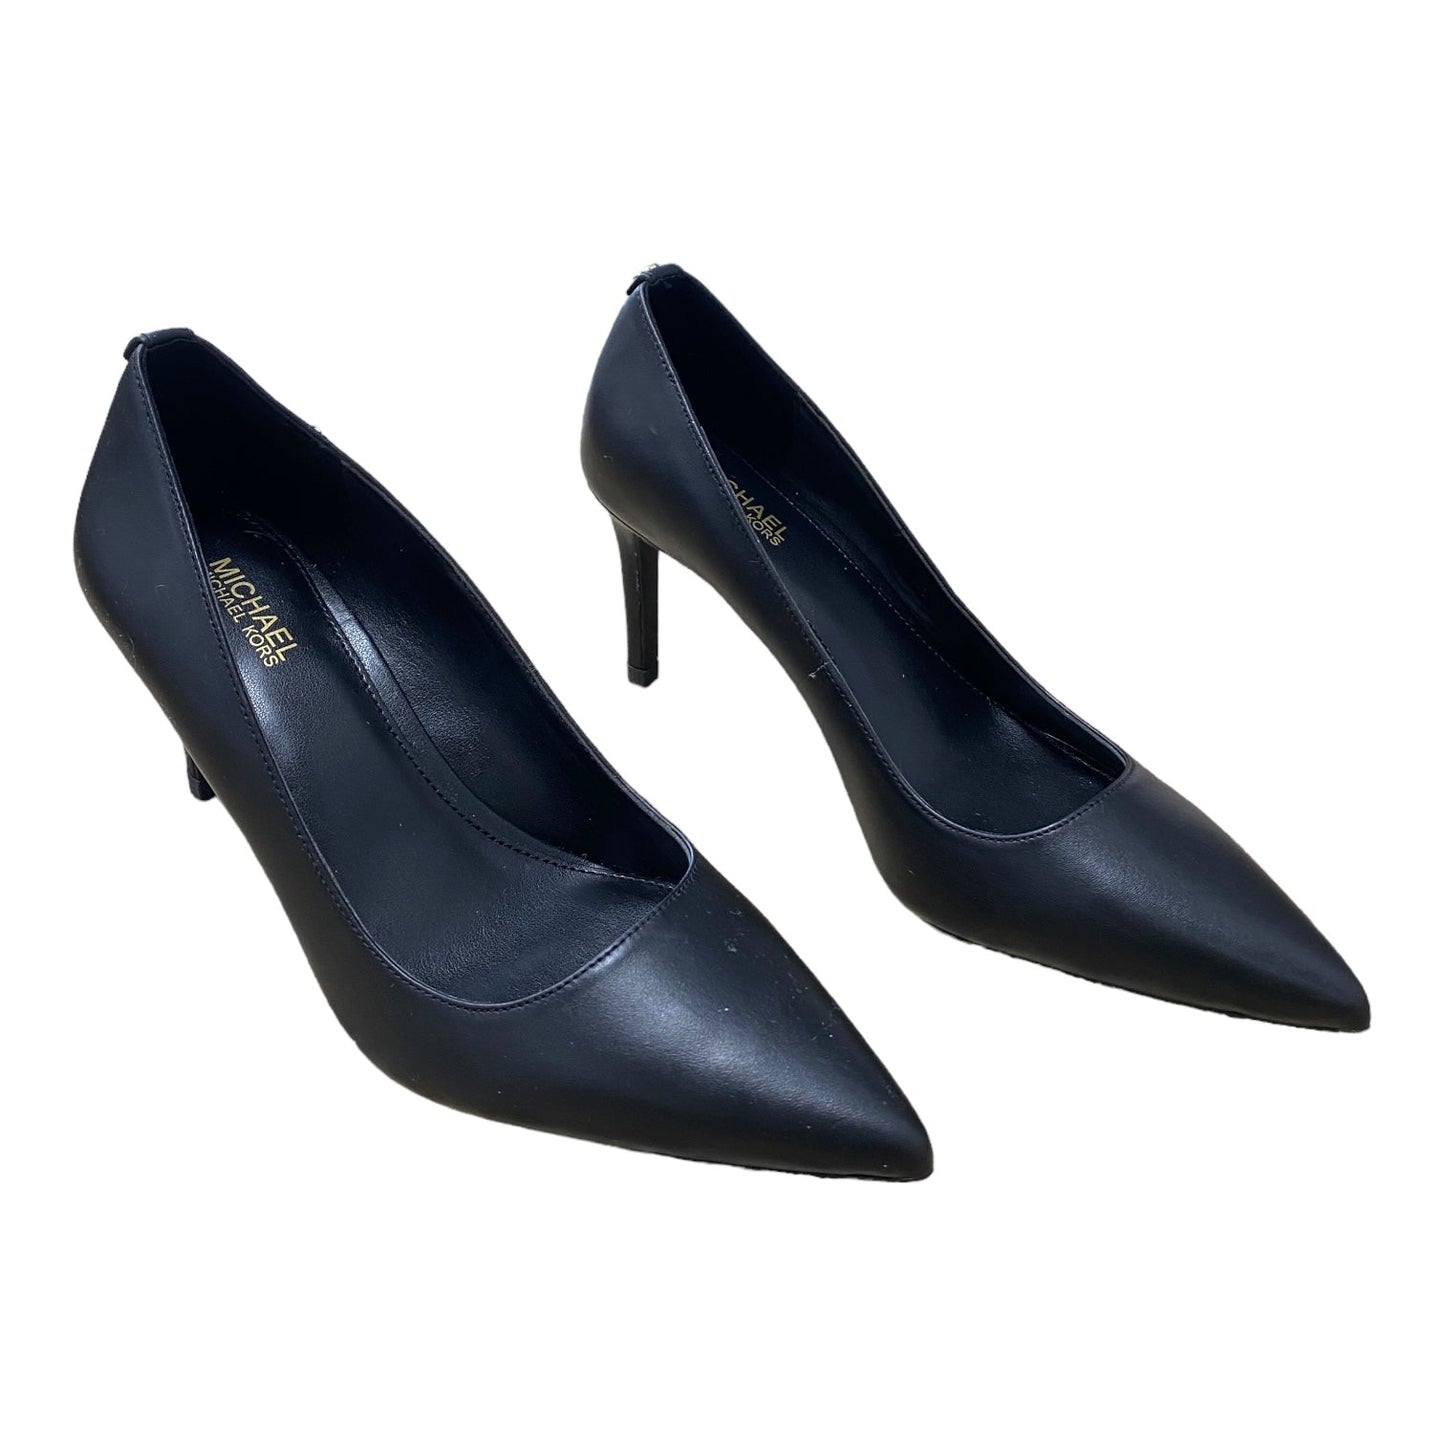 Black Shoes Heels Stiletto Michael Kors, Size 6